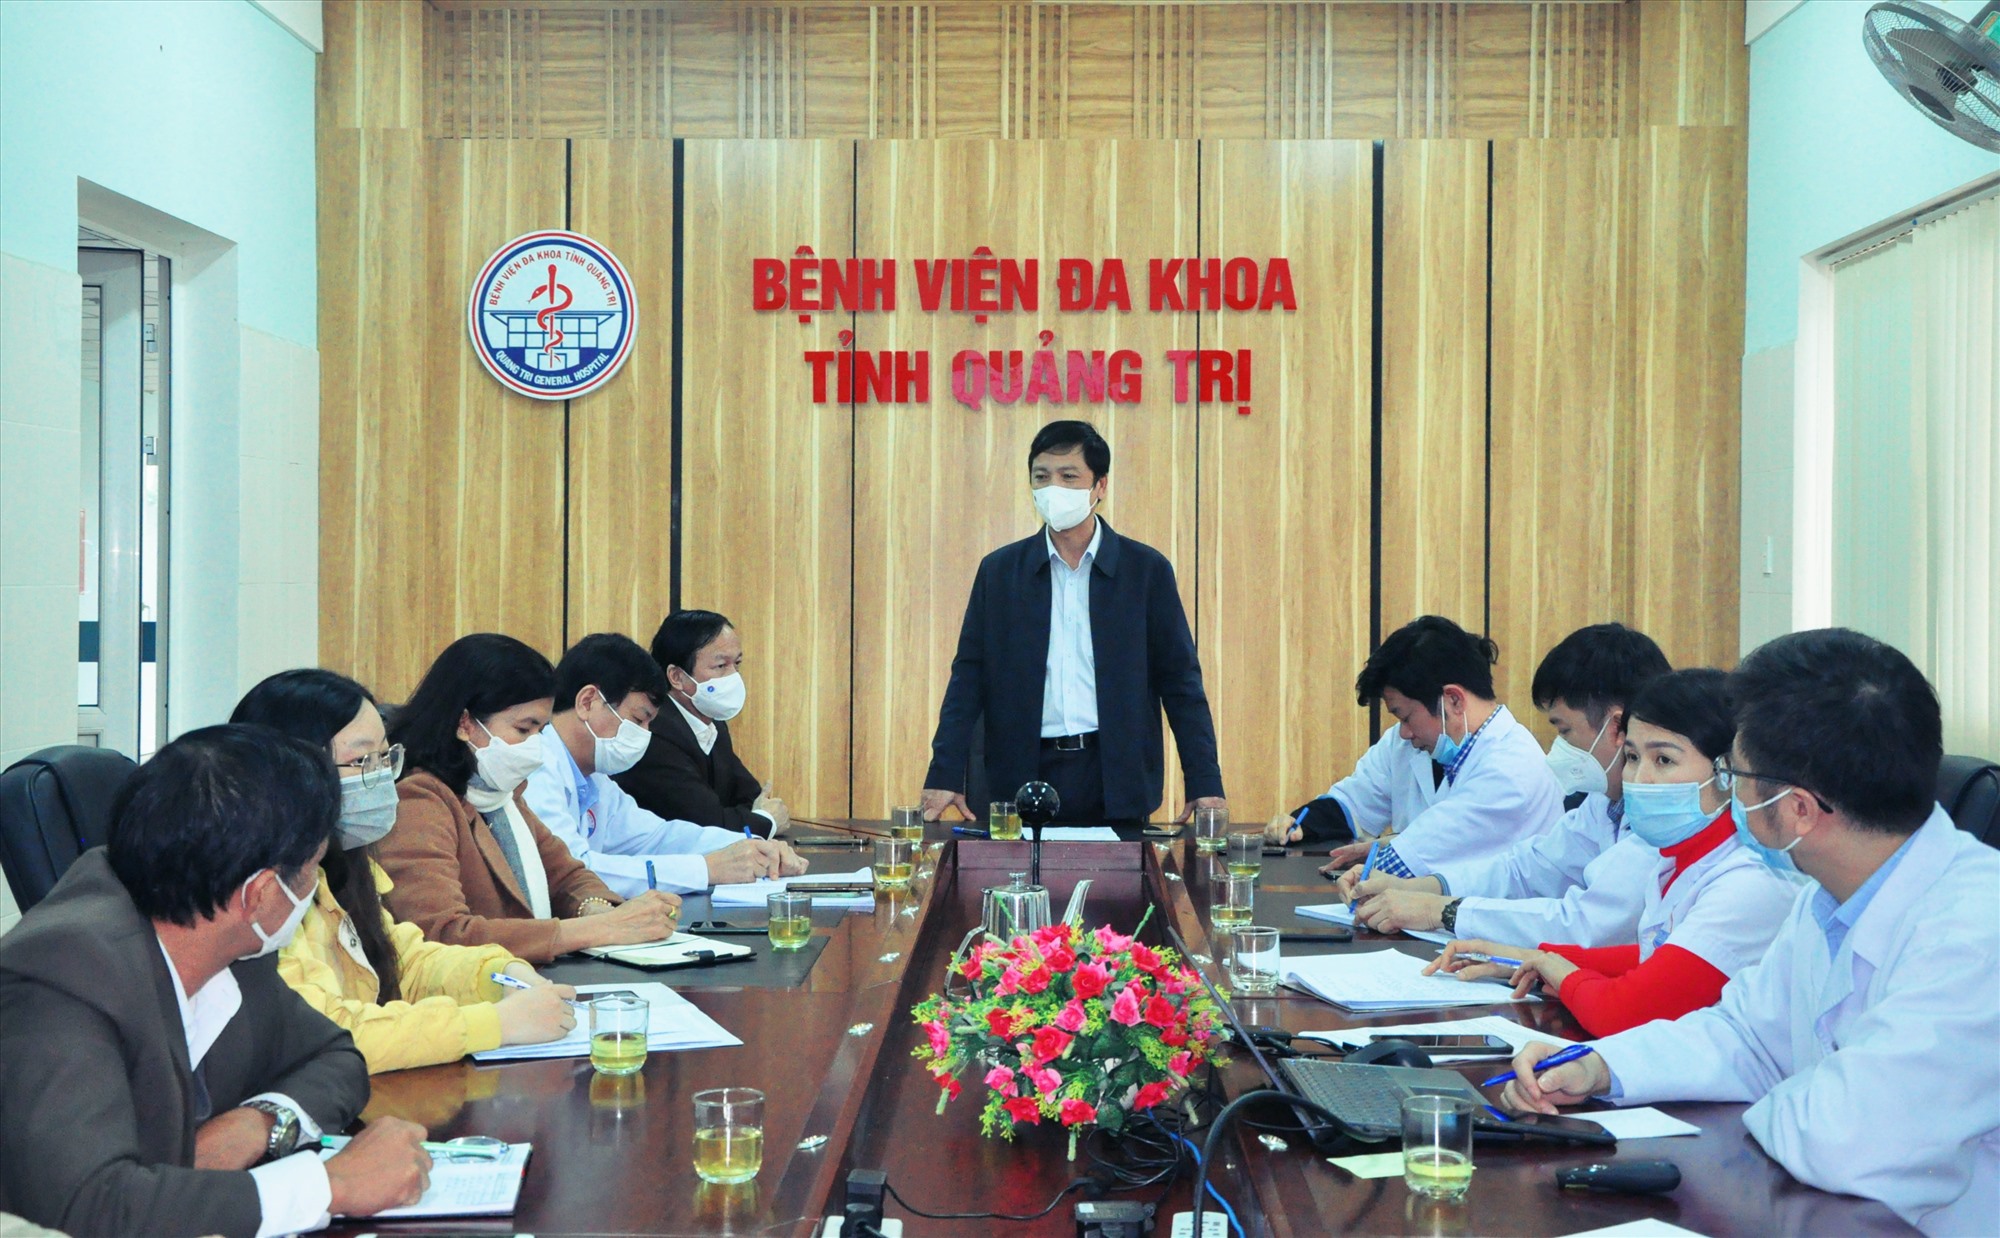 Phó Chủ tịch UBND tỉnh Hoàng Nam phát biểu tại buổi làm việc với lãnh đạo Bệnh viện Đa khoa tỉnh - Ảnh: Q.H